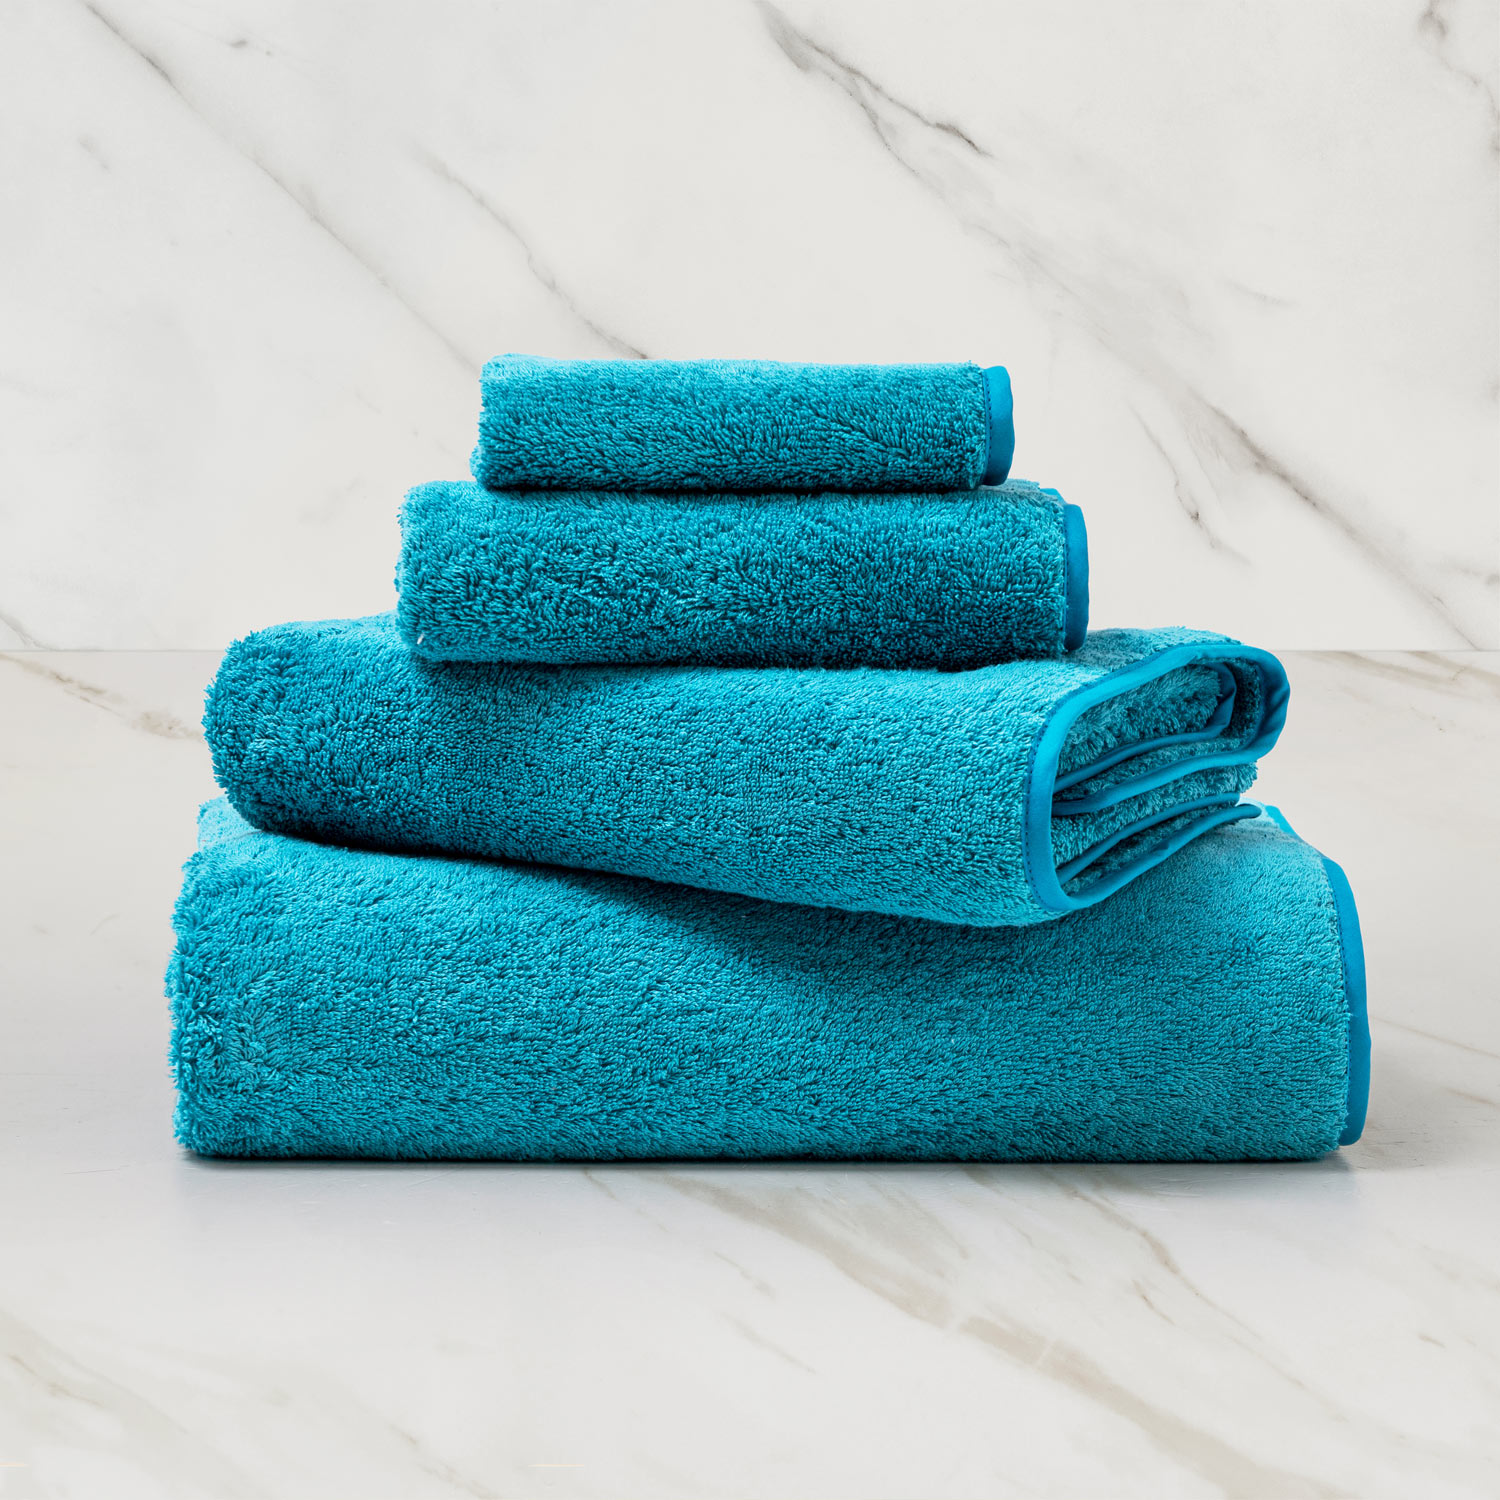 Unito Bath Towel | Frette